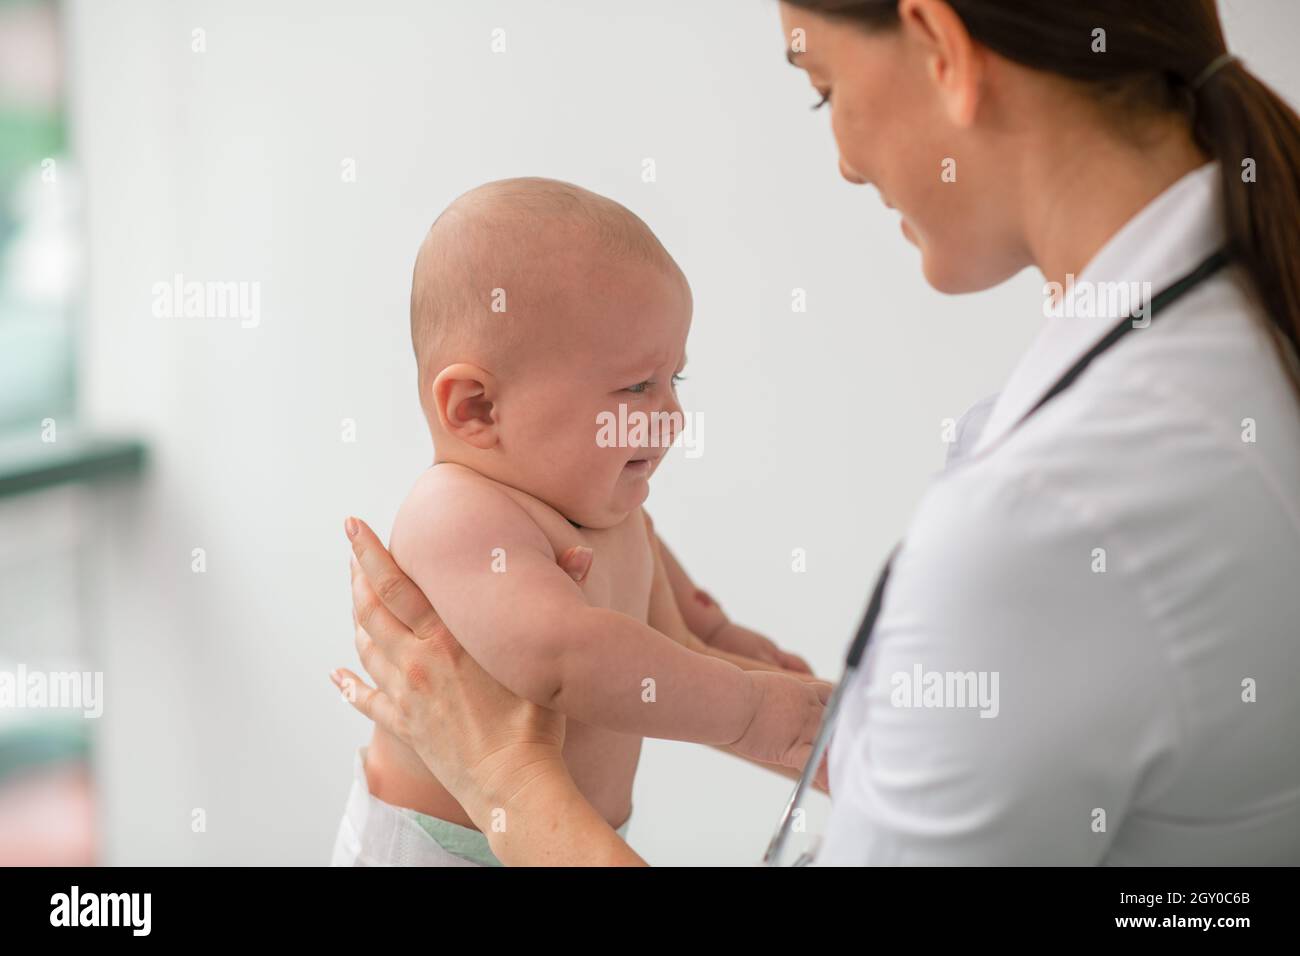 Experienced pediatrician examining a newborn baby Stock Photo